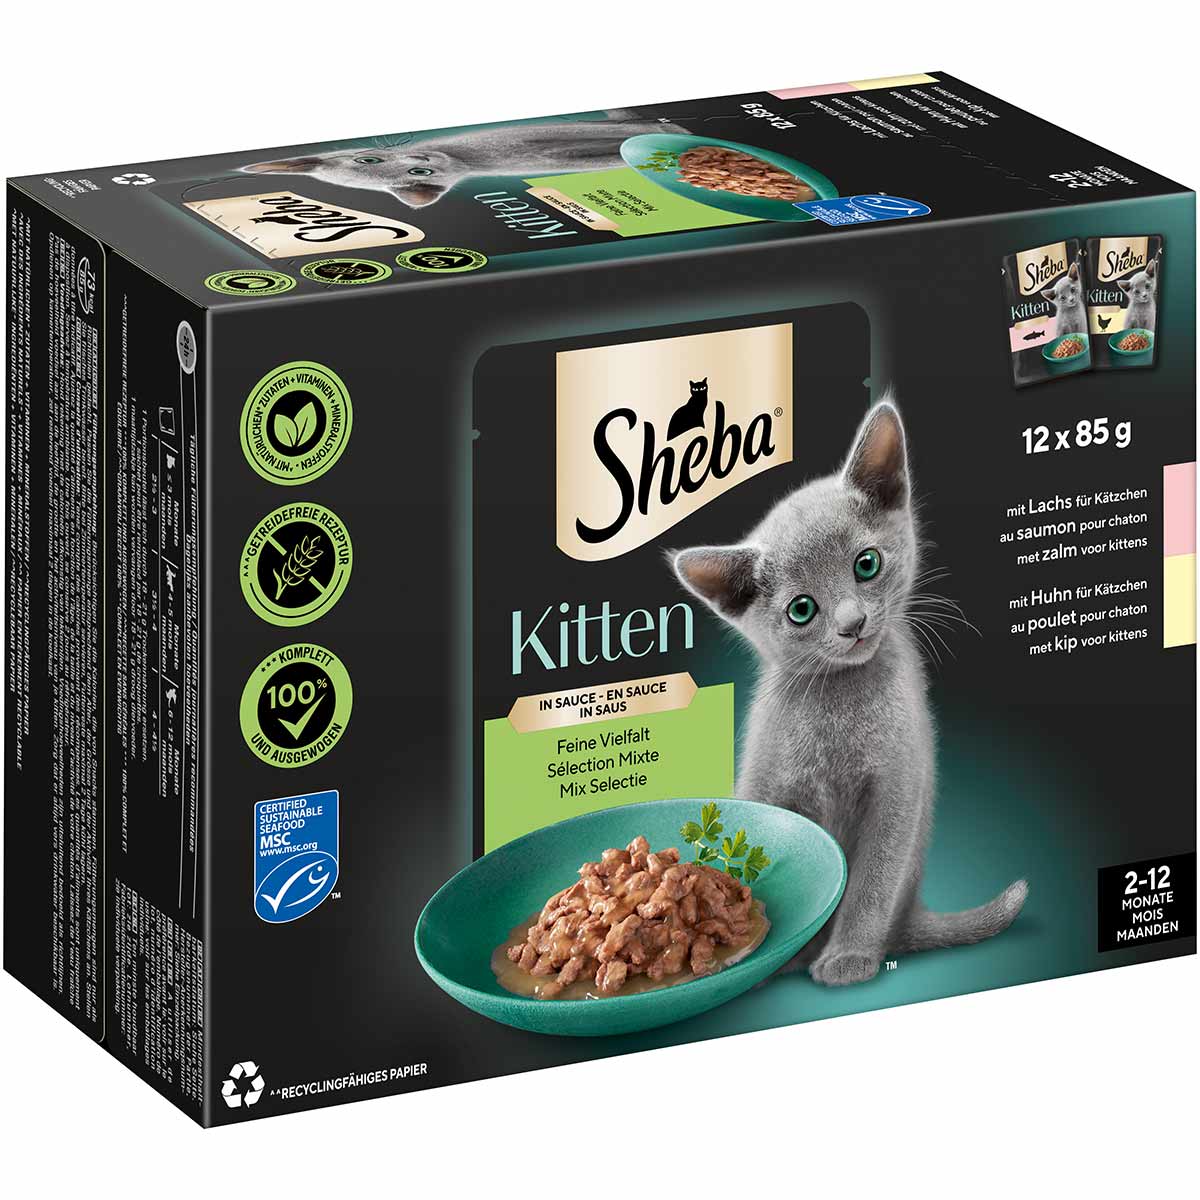 Sheba Multipack Kitten in Sauce Feine Vielfalt 12x85g